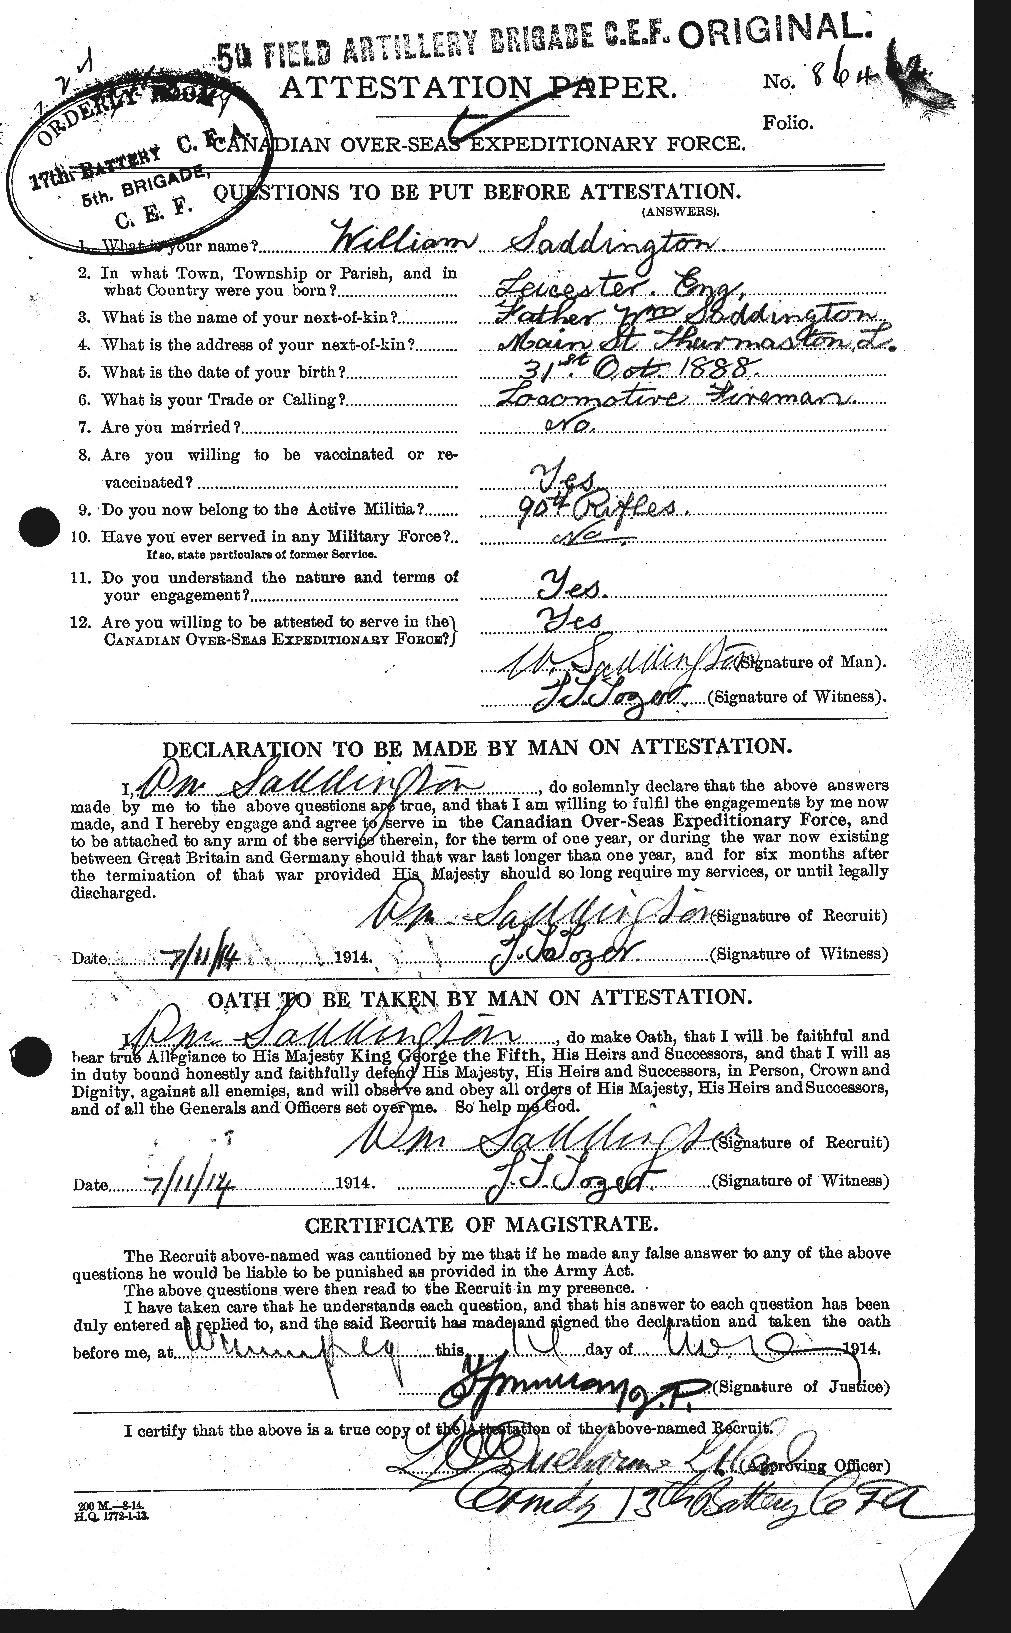 Dossiers du Personnel de la Première Guerre mondiale - CEC 077792a